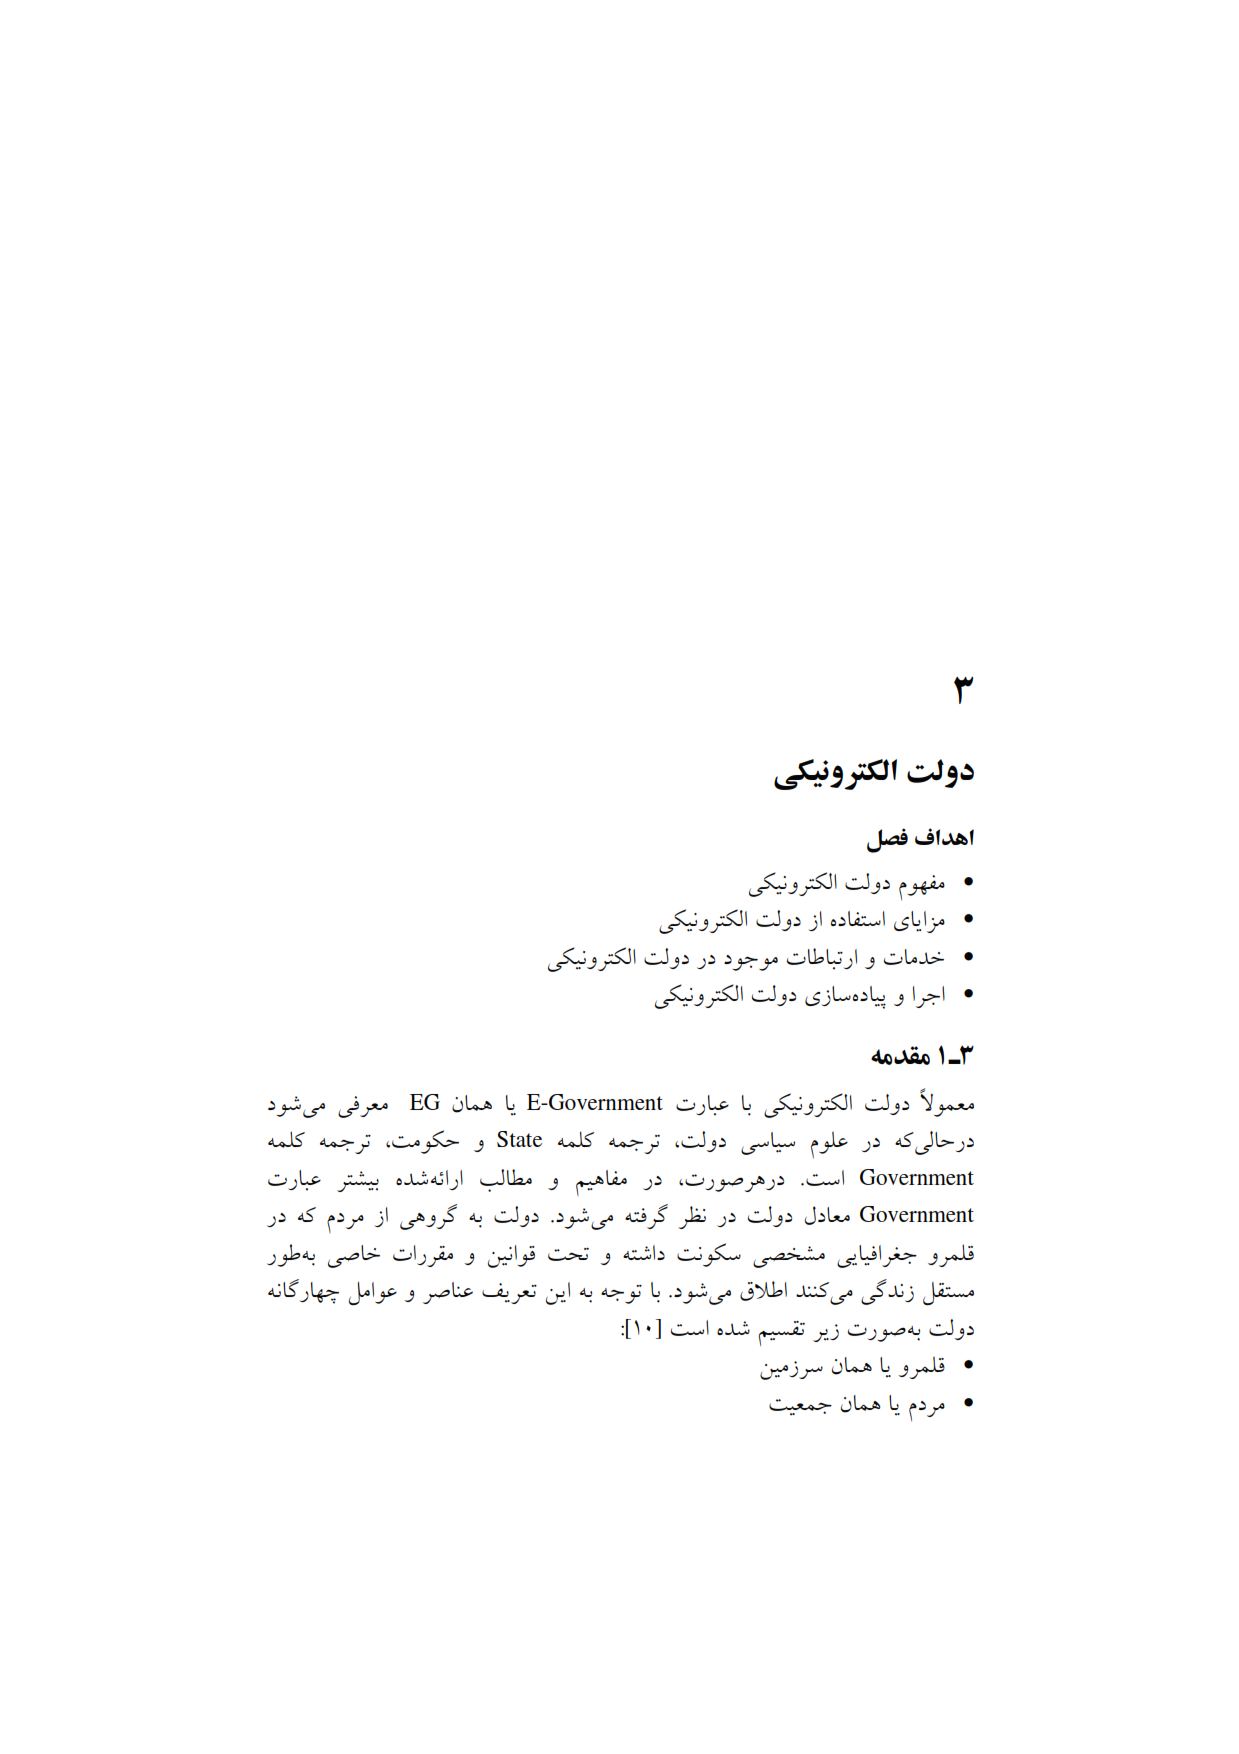 دانلود کتاب قابل سرچ و جستجو خدمات الکترونیکی pdf محمد علی ترکمانی و مهیار صدری شجاعی دانشگاه علمی کاربردی + نمونه سوالات تستی 